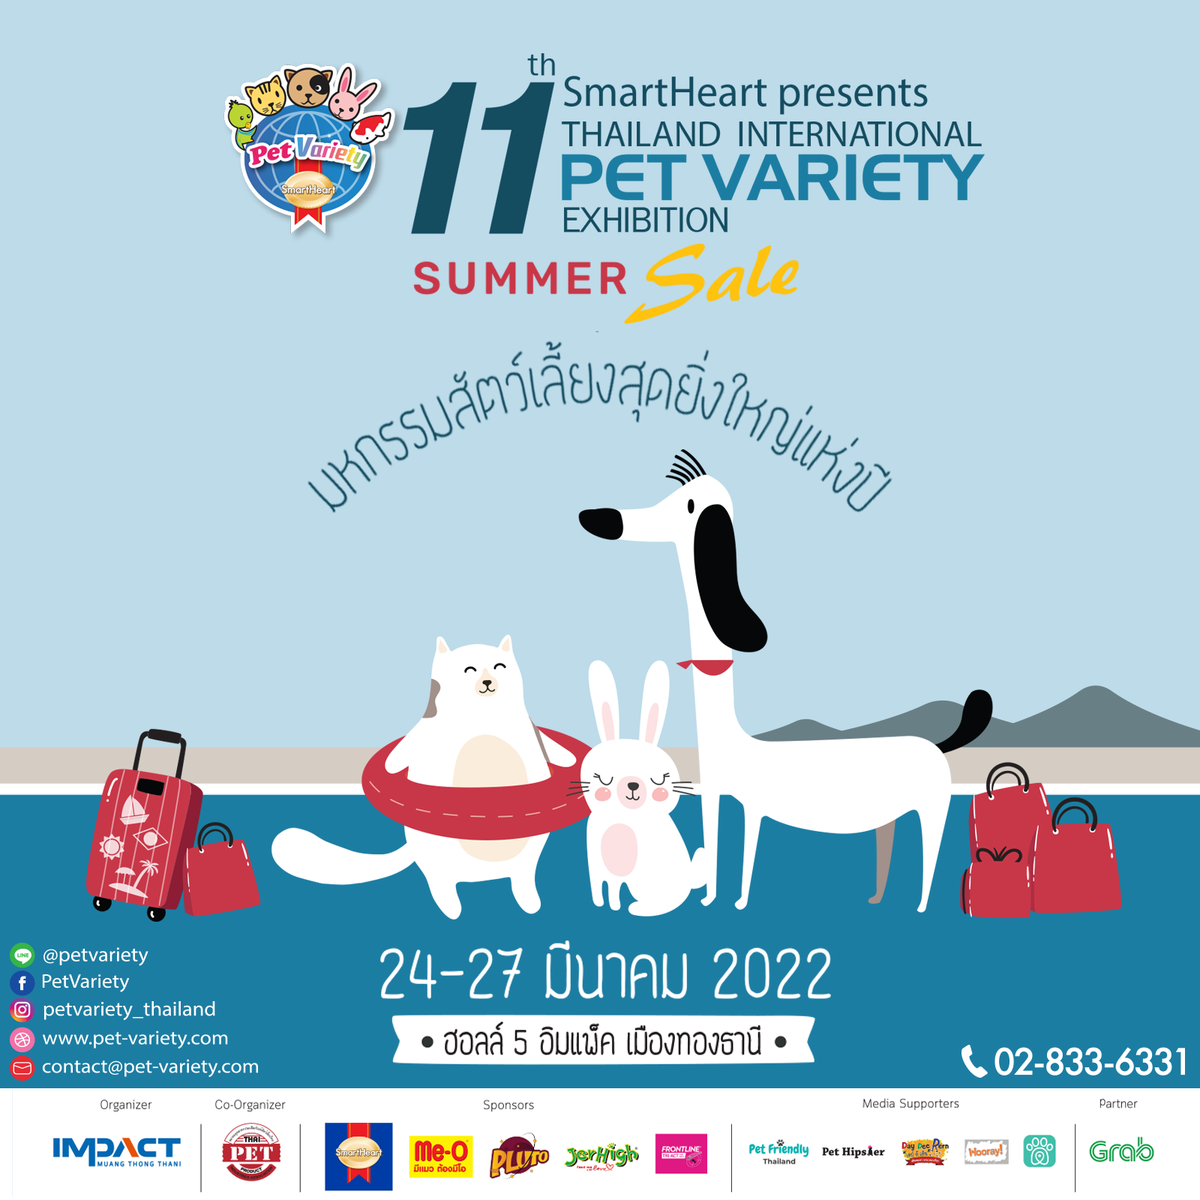 ชวนช้อปงาน SmartHeart presents Thailand International Pet Variety Exhibition ครั้งที่ 11